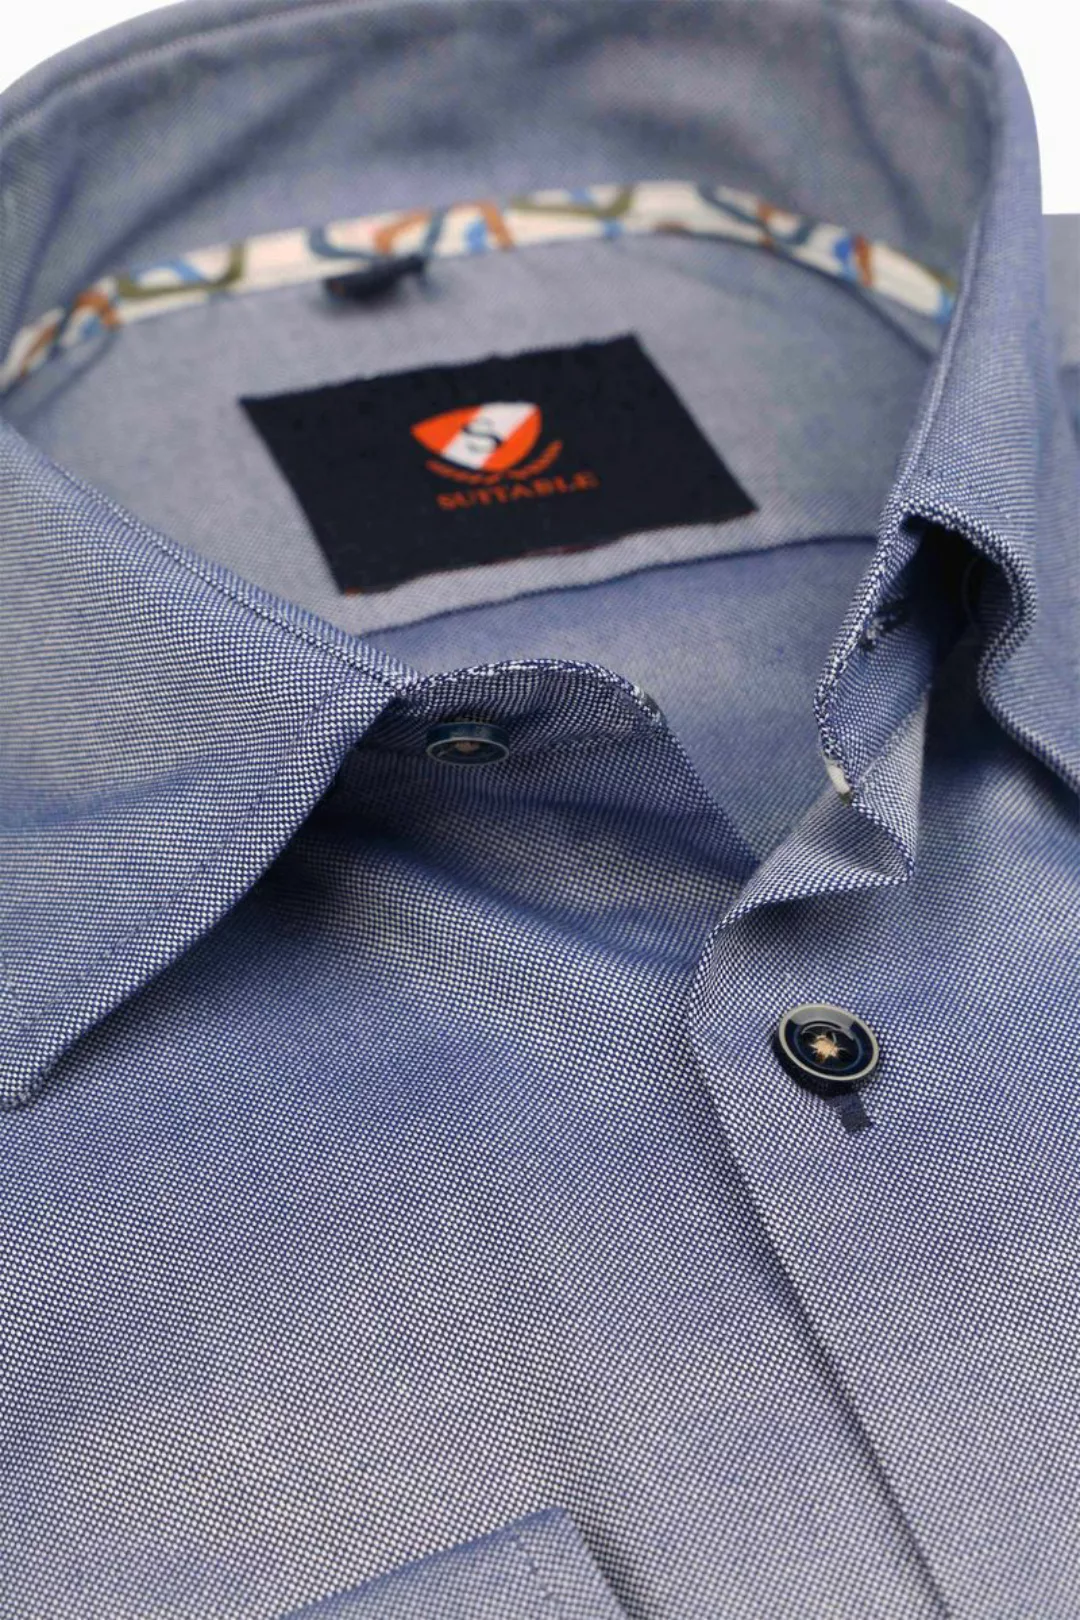 Suitable Hemd Oxford Blau - Größe 43 günstig online kaufen